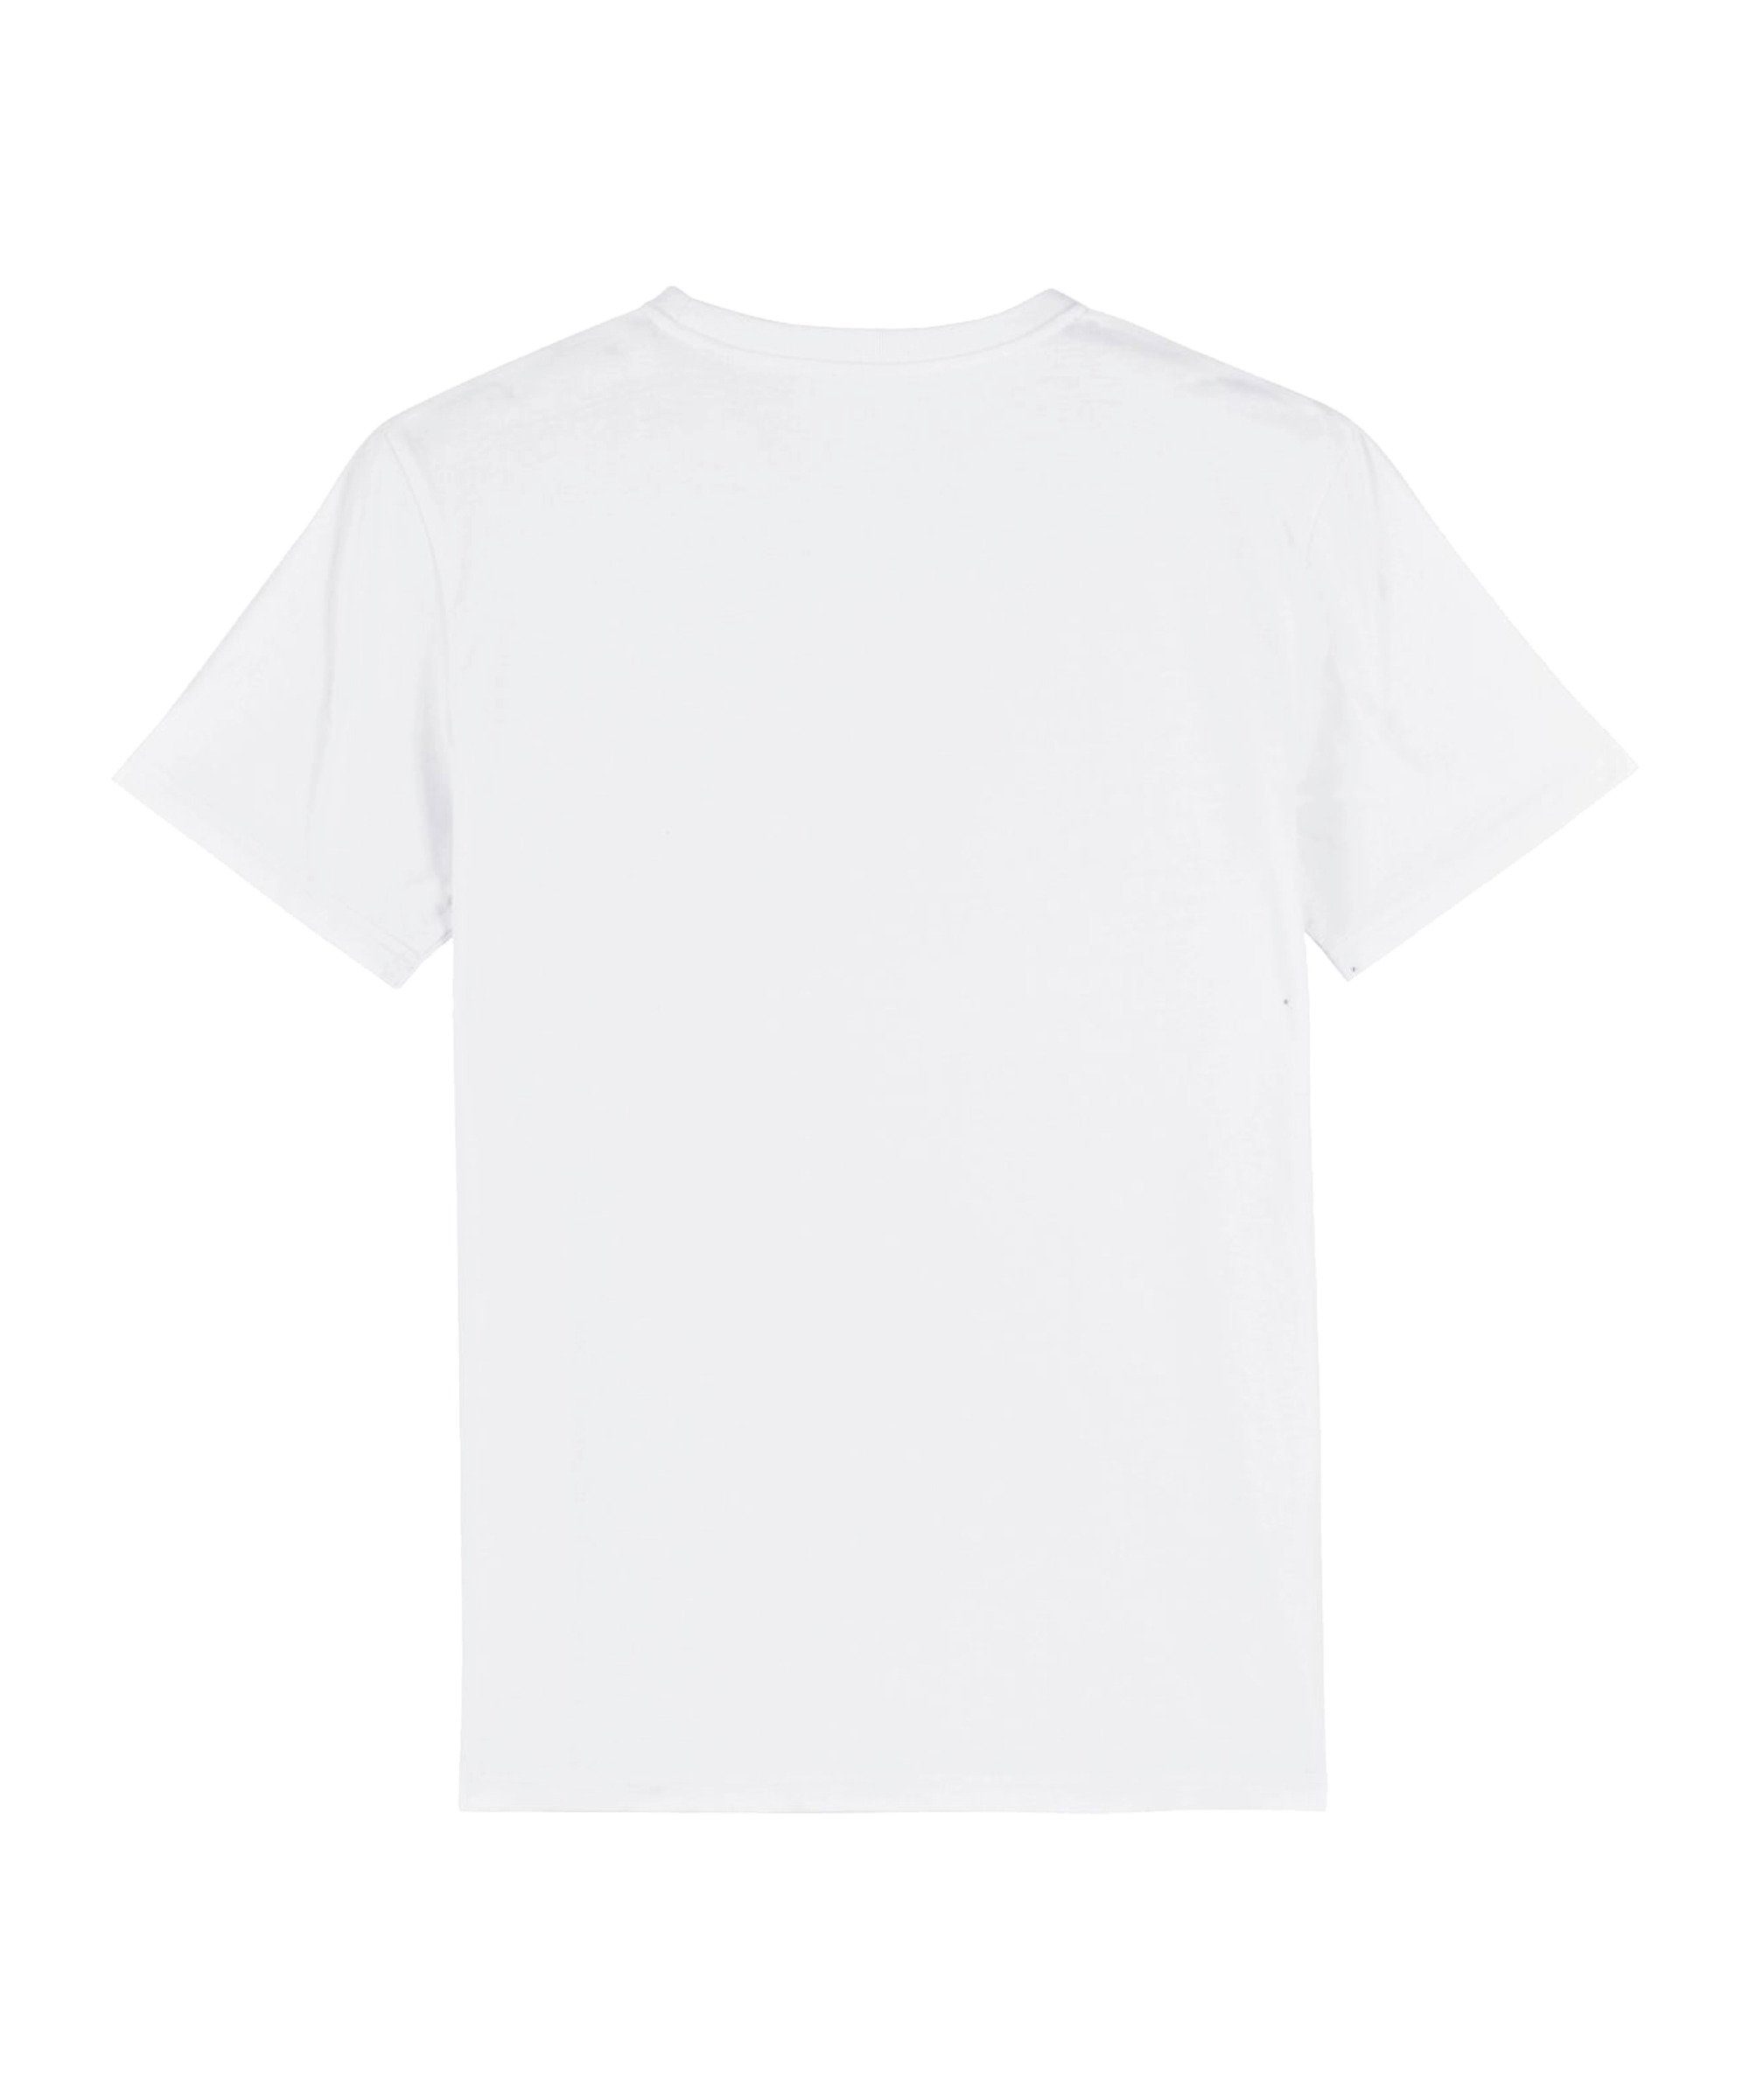 Nachhaltiges "Friendly" T-Shirt Produkt Bolzplatzkind weiss Sand T-Shirt